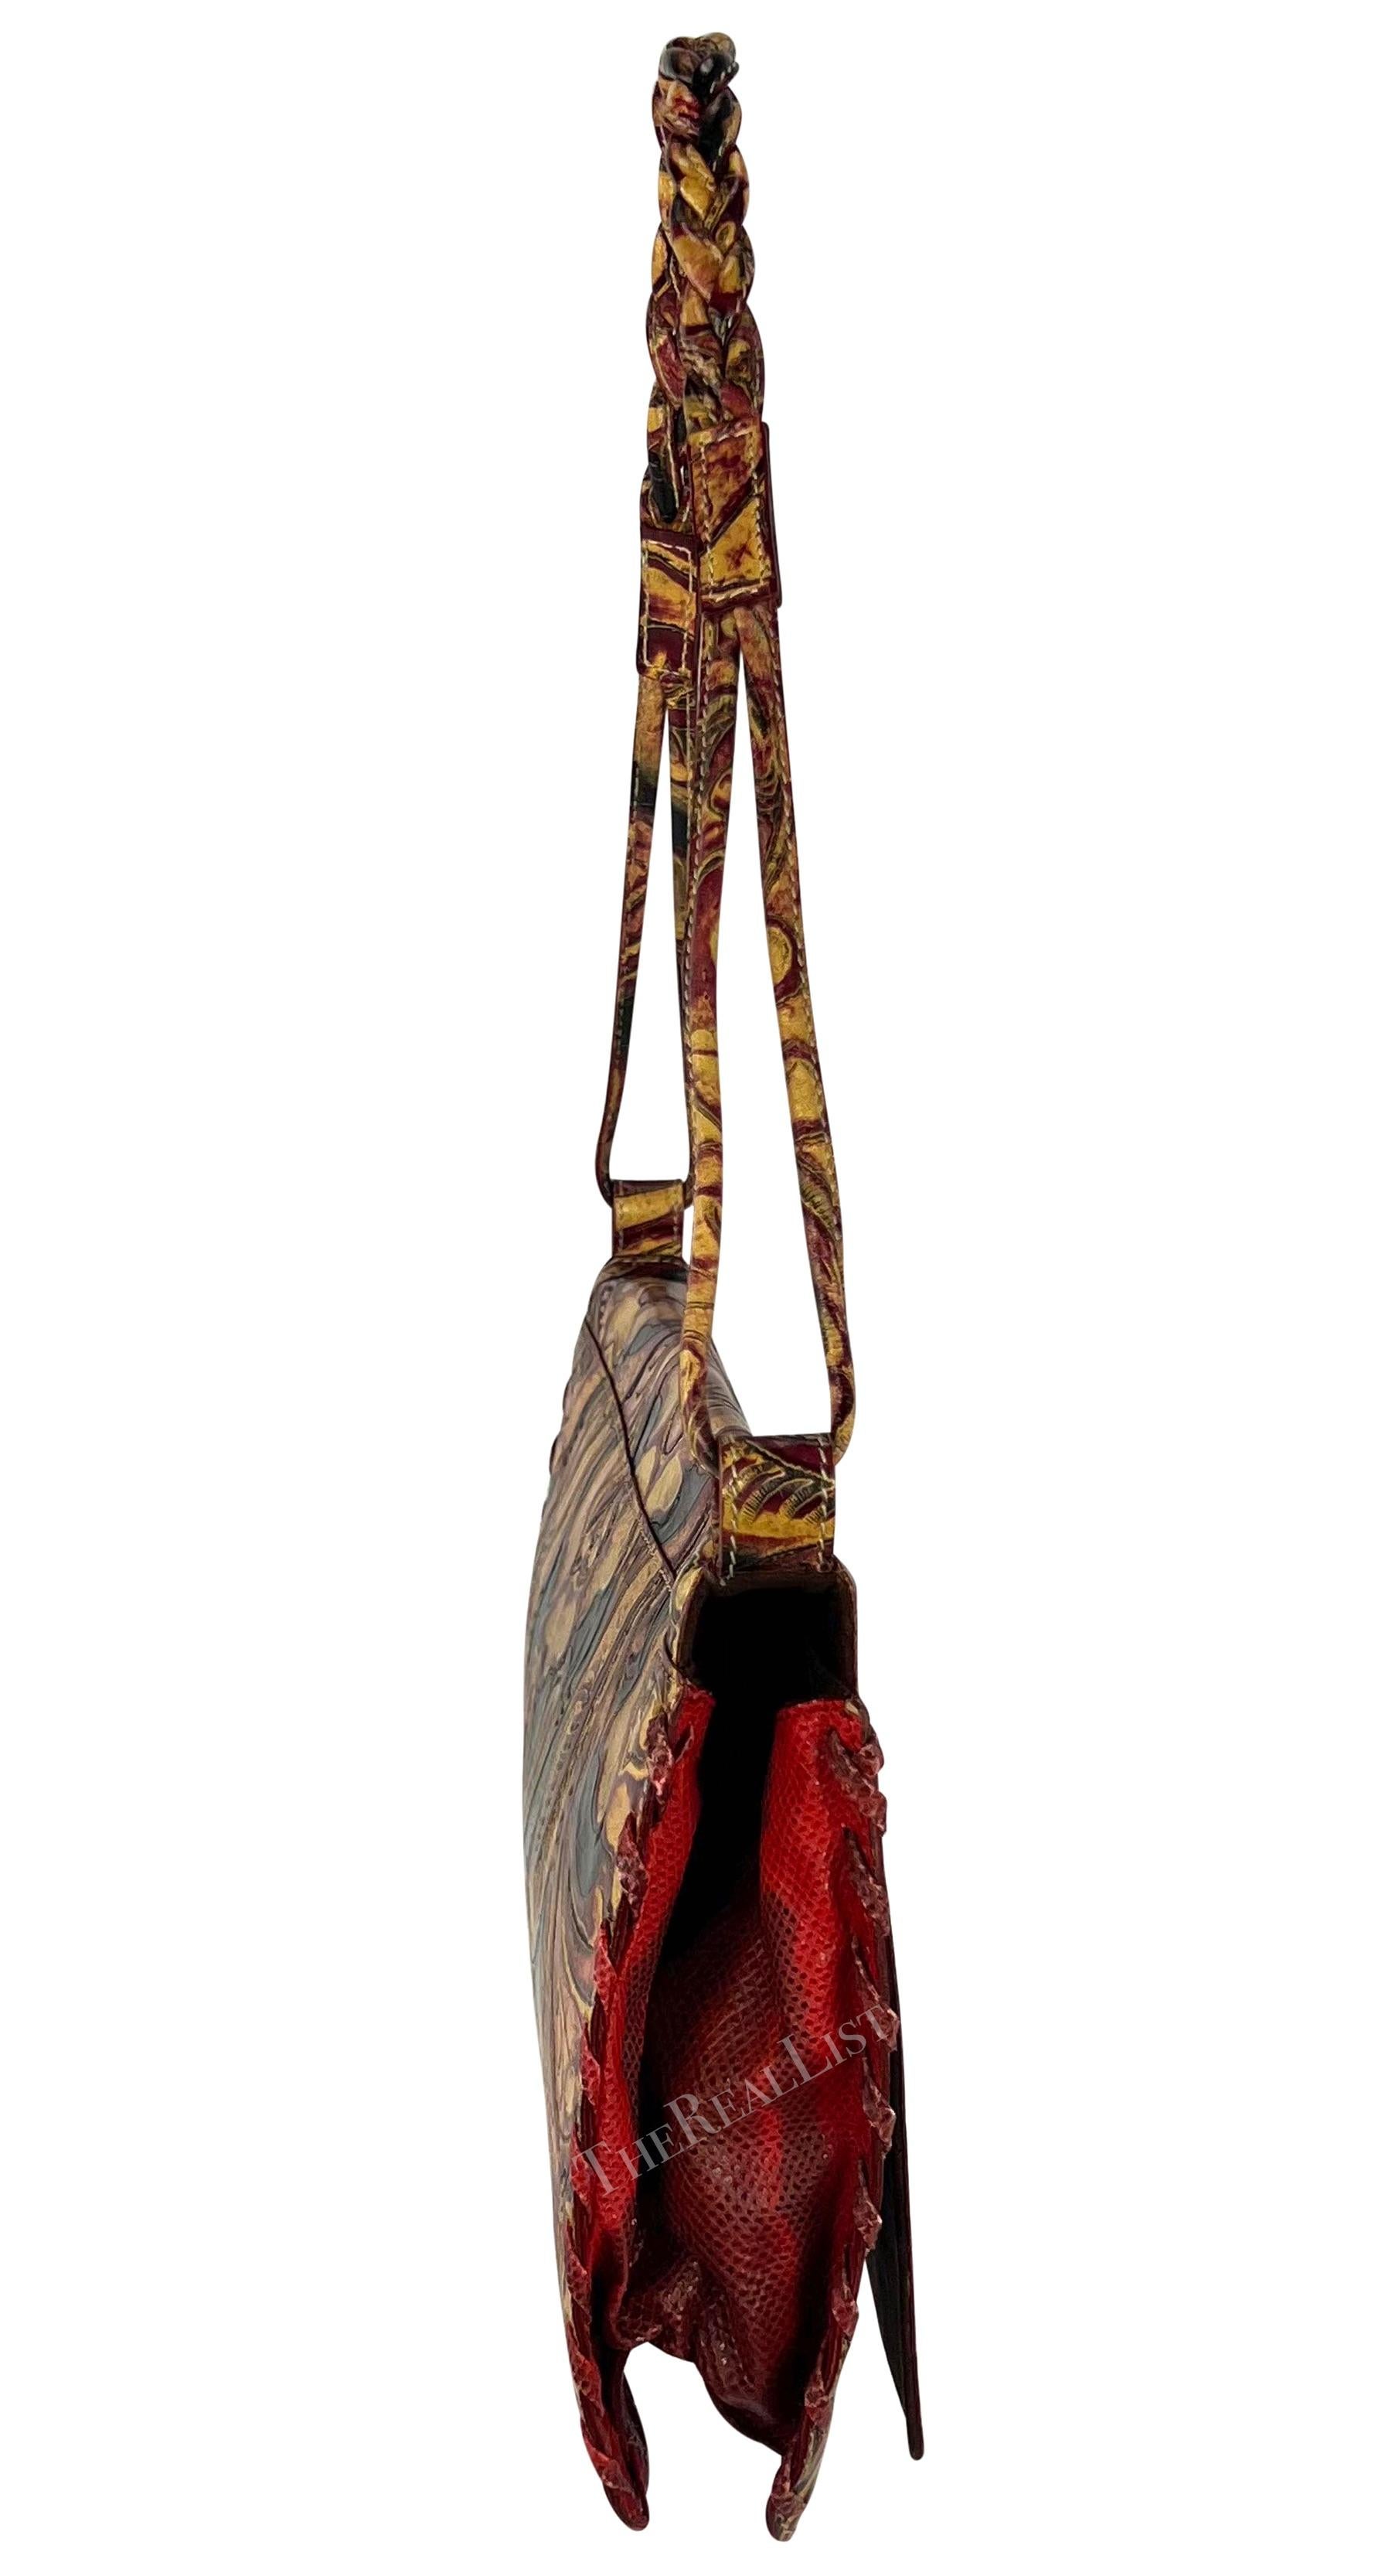 Emanuel Ungaro präsentiert eine Umhängetasche aus hellbraunem und rotem Leder mit Schnitzereien. Diese schicke Tasche aus den frühen 2000er Jahren ist komplett aus hellbraunem, rotem und schwarzem Leder gefertigt und mit einem geschnitzten floralen